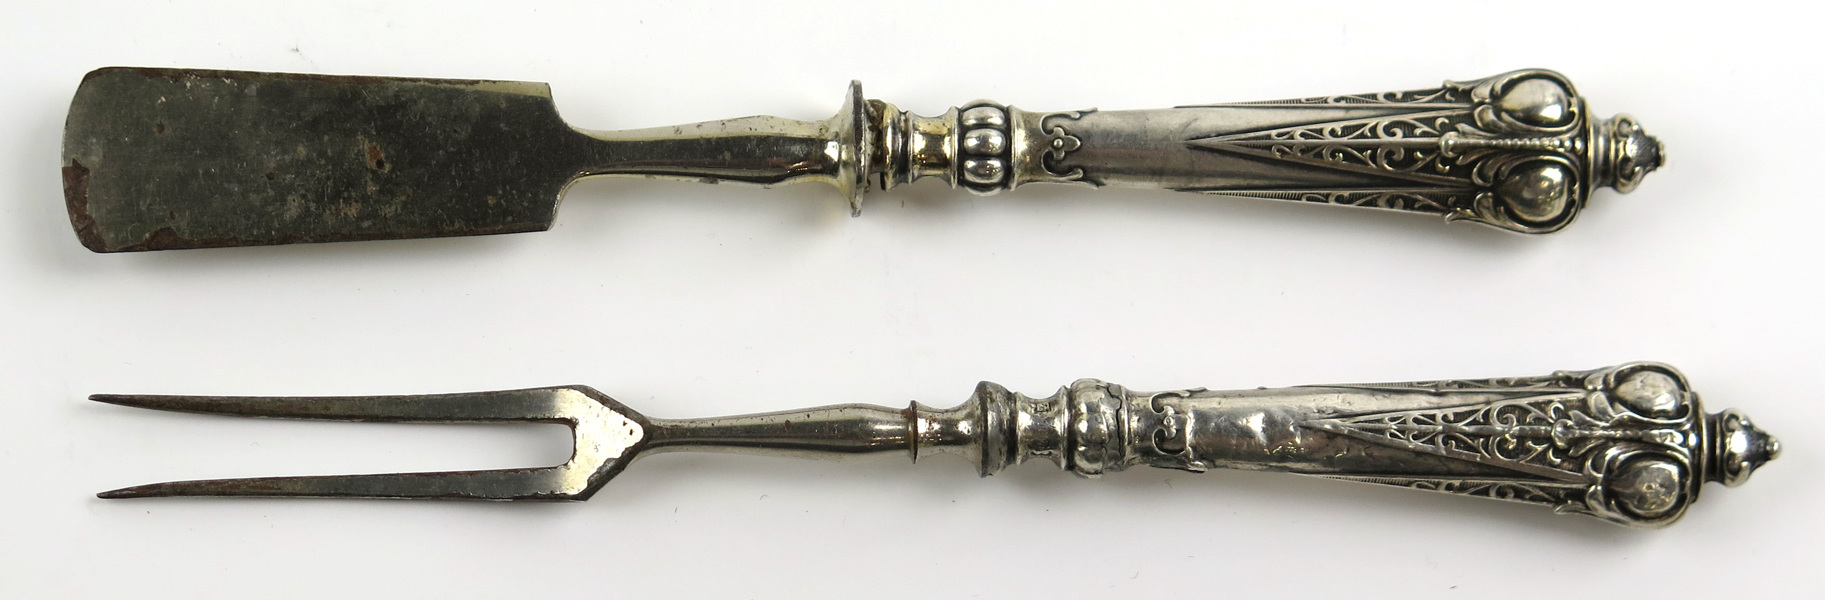 Ostkniv- och gaffel, silver med kromade blad och tenar, _14557a_lg.jpeg